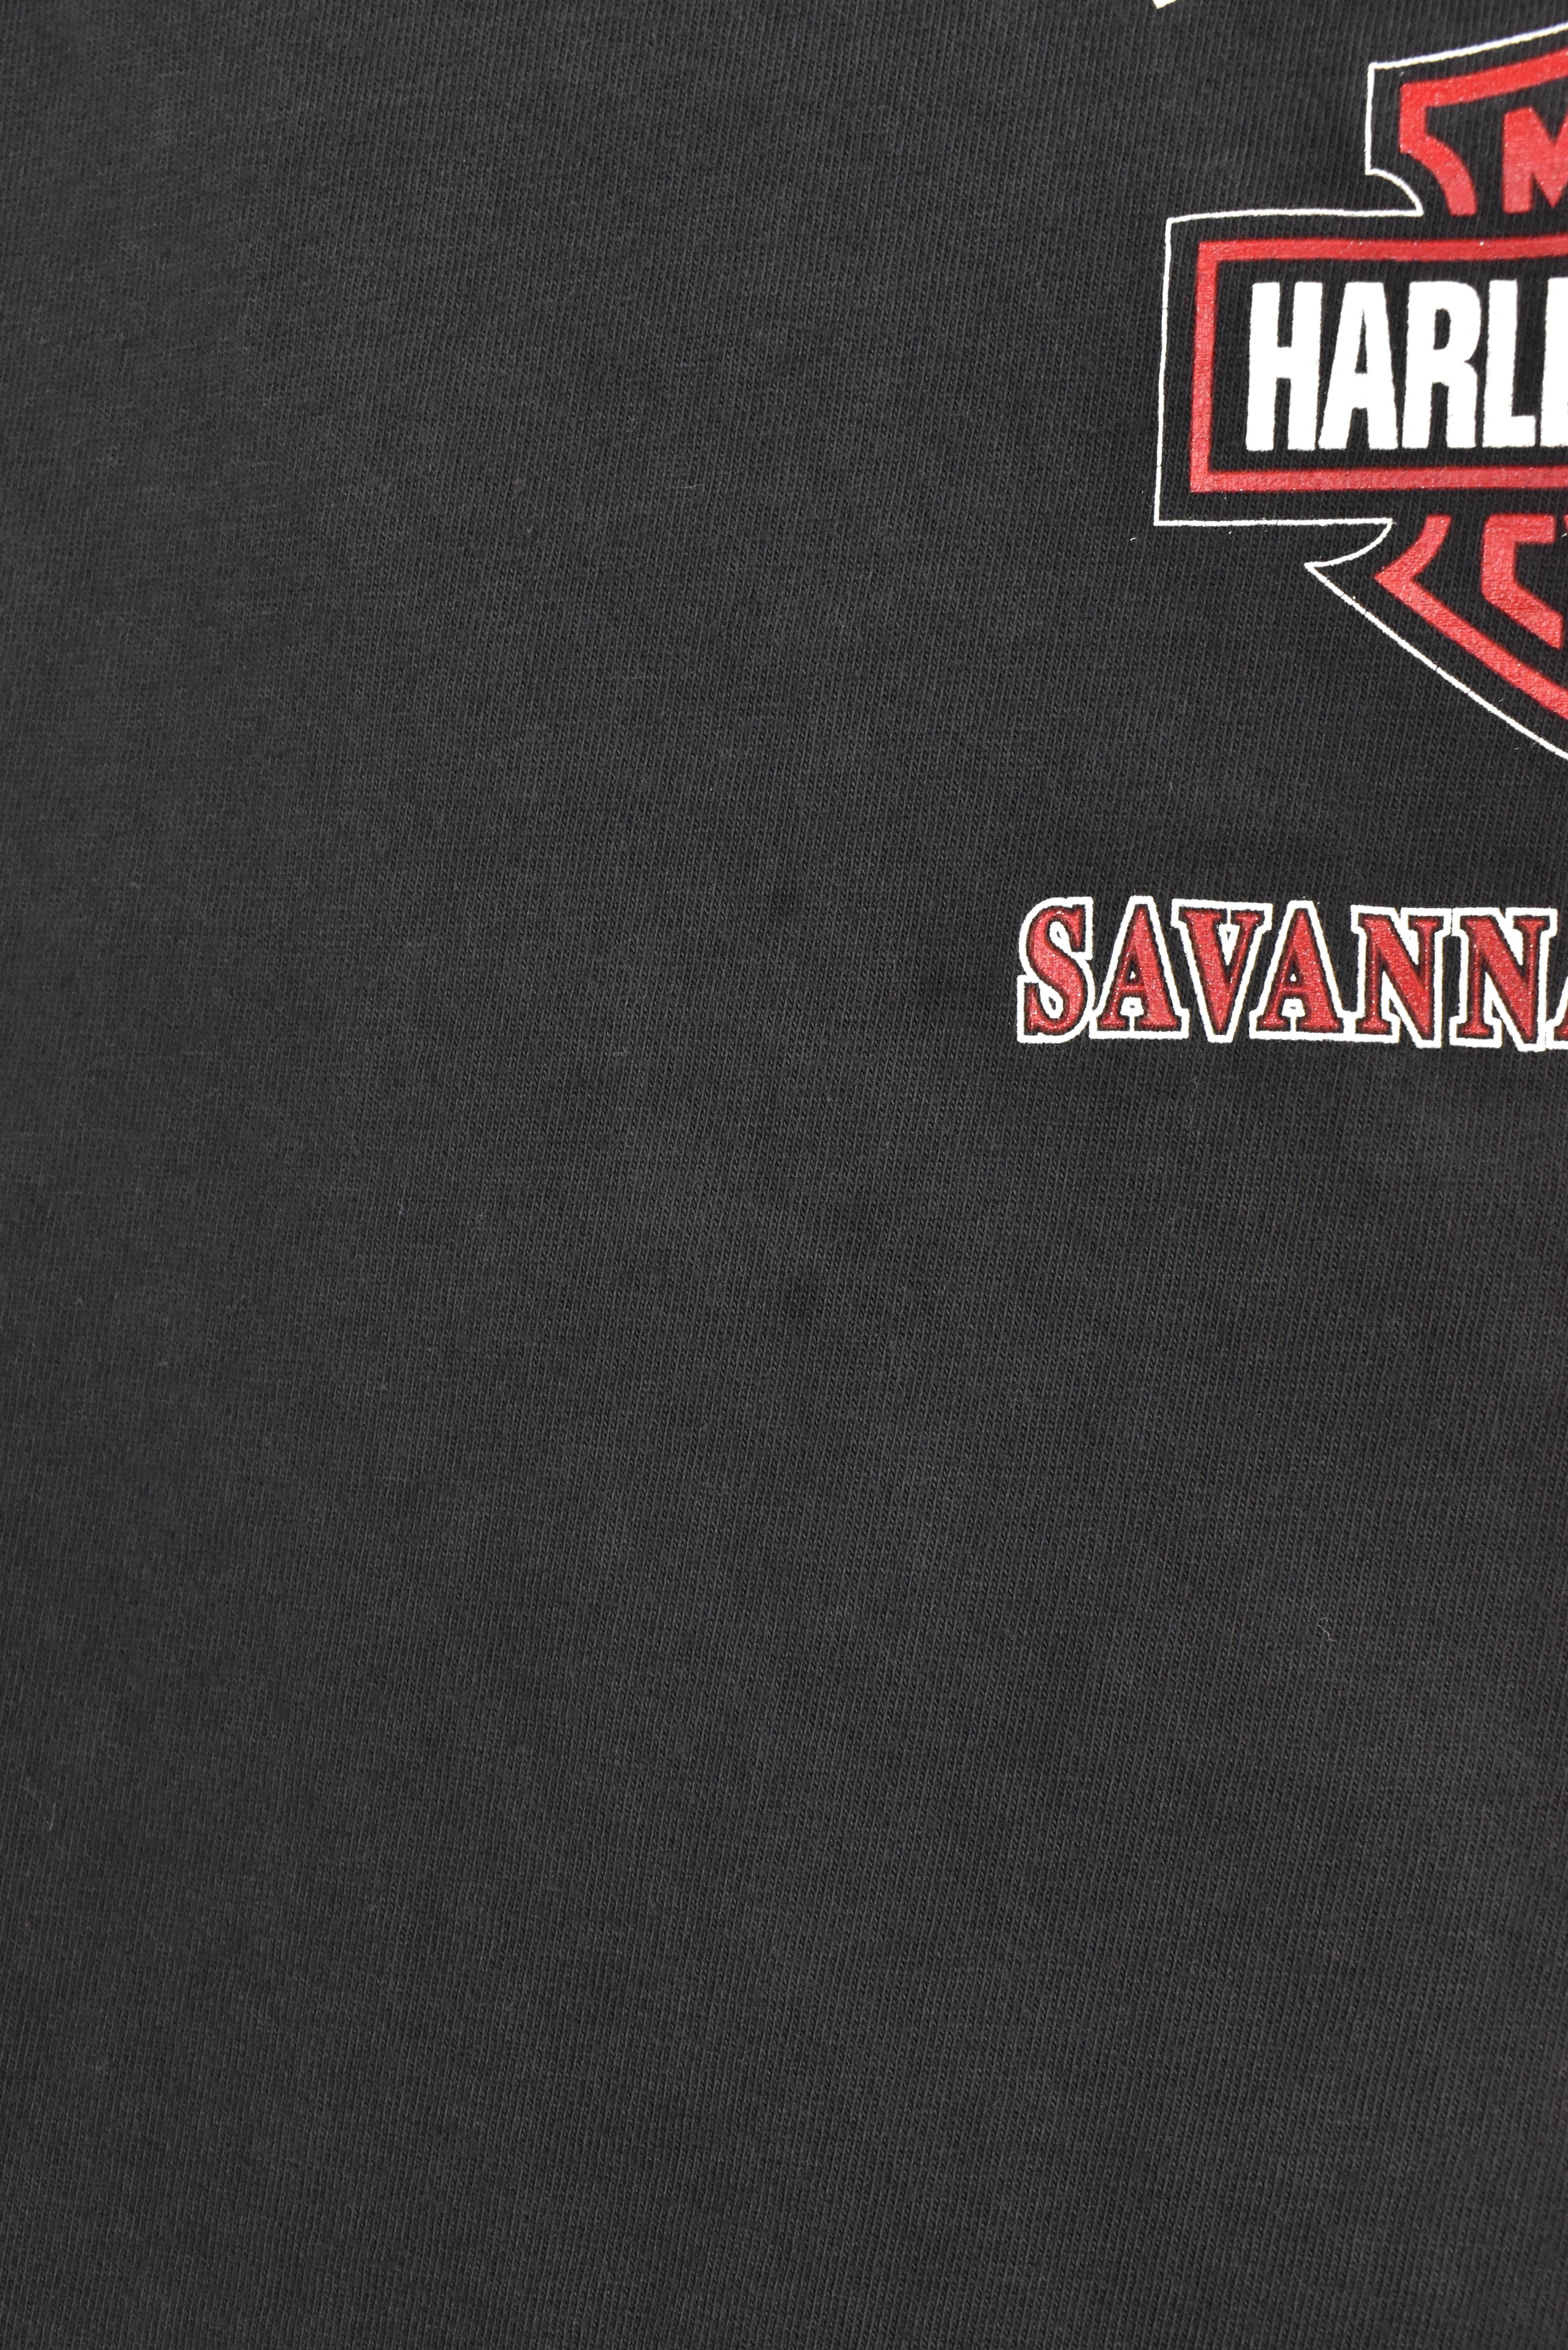 Women's vintage Harley Davidson shirt, 2001 motorcycle biker graphic tee - large, black HARLEY DAVIDSON